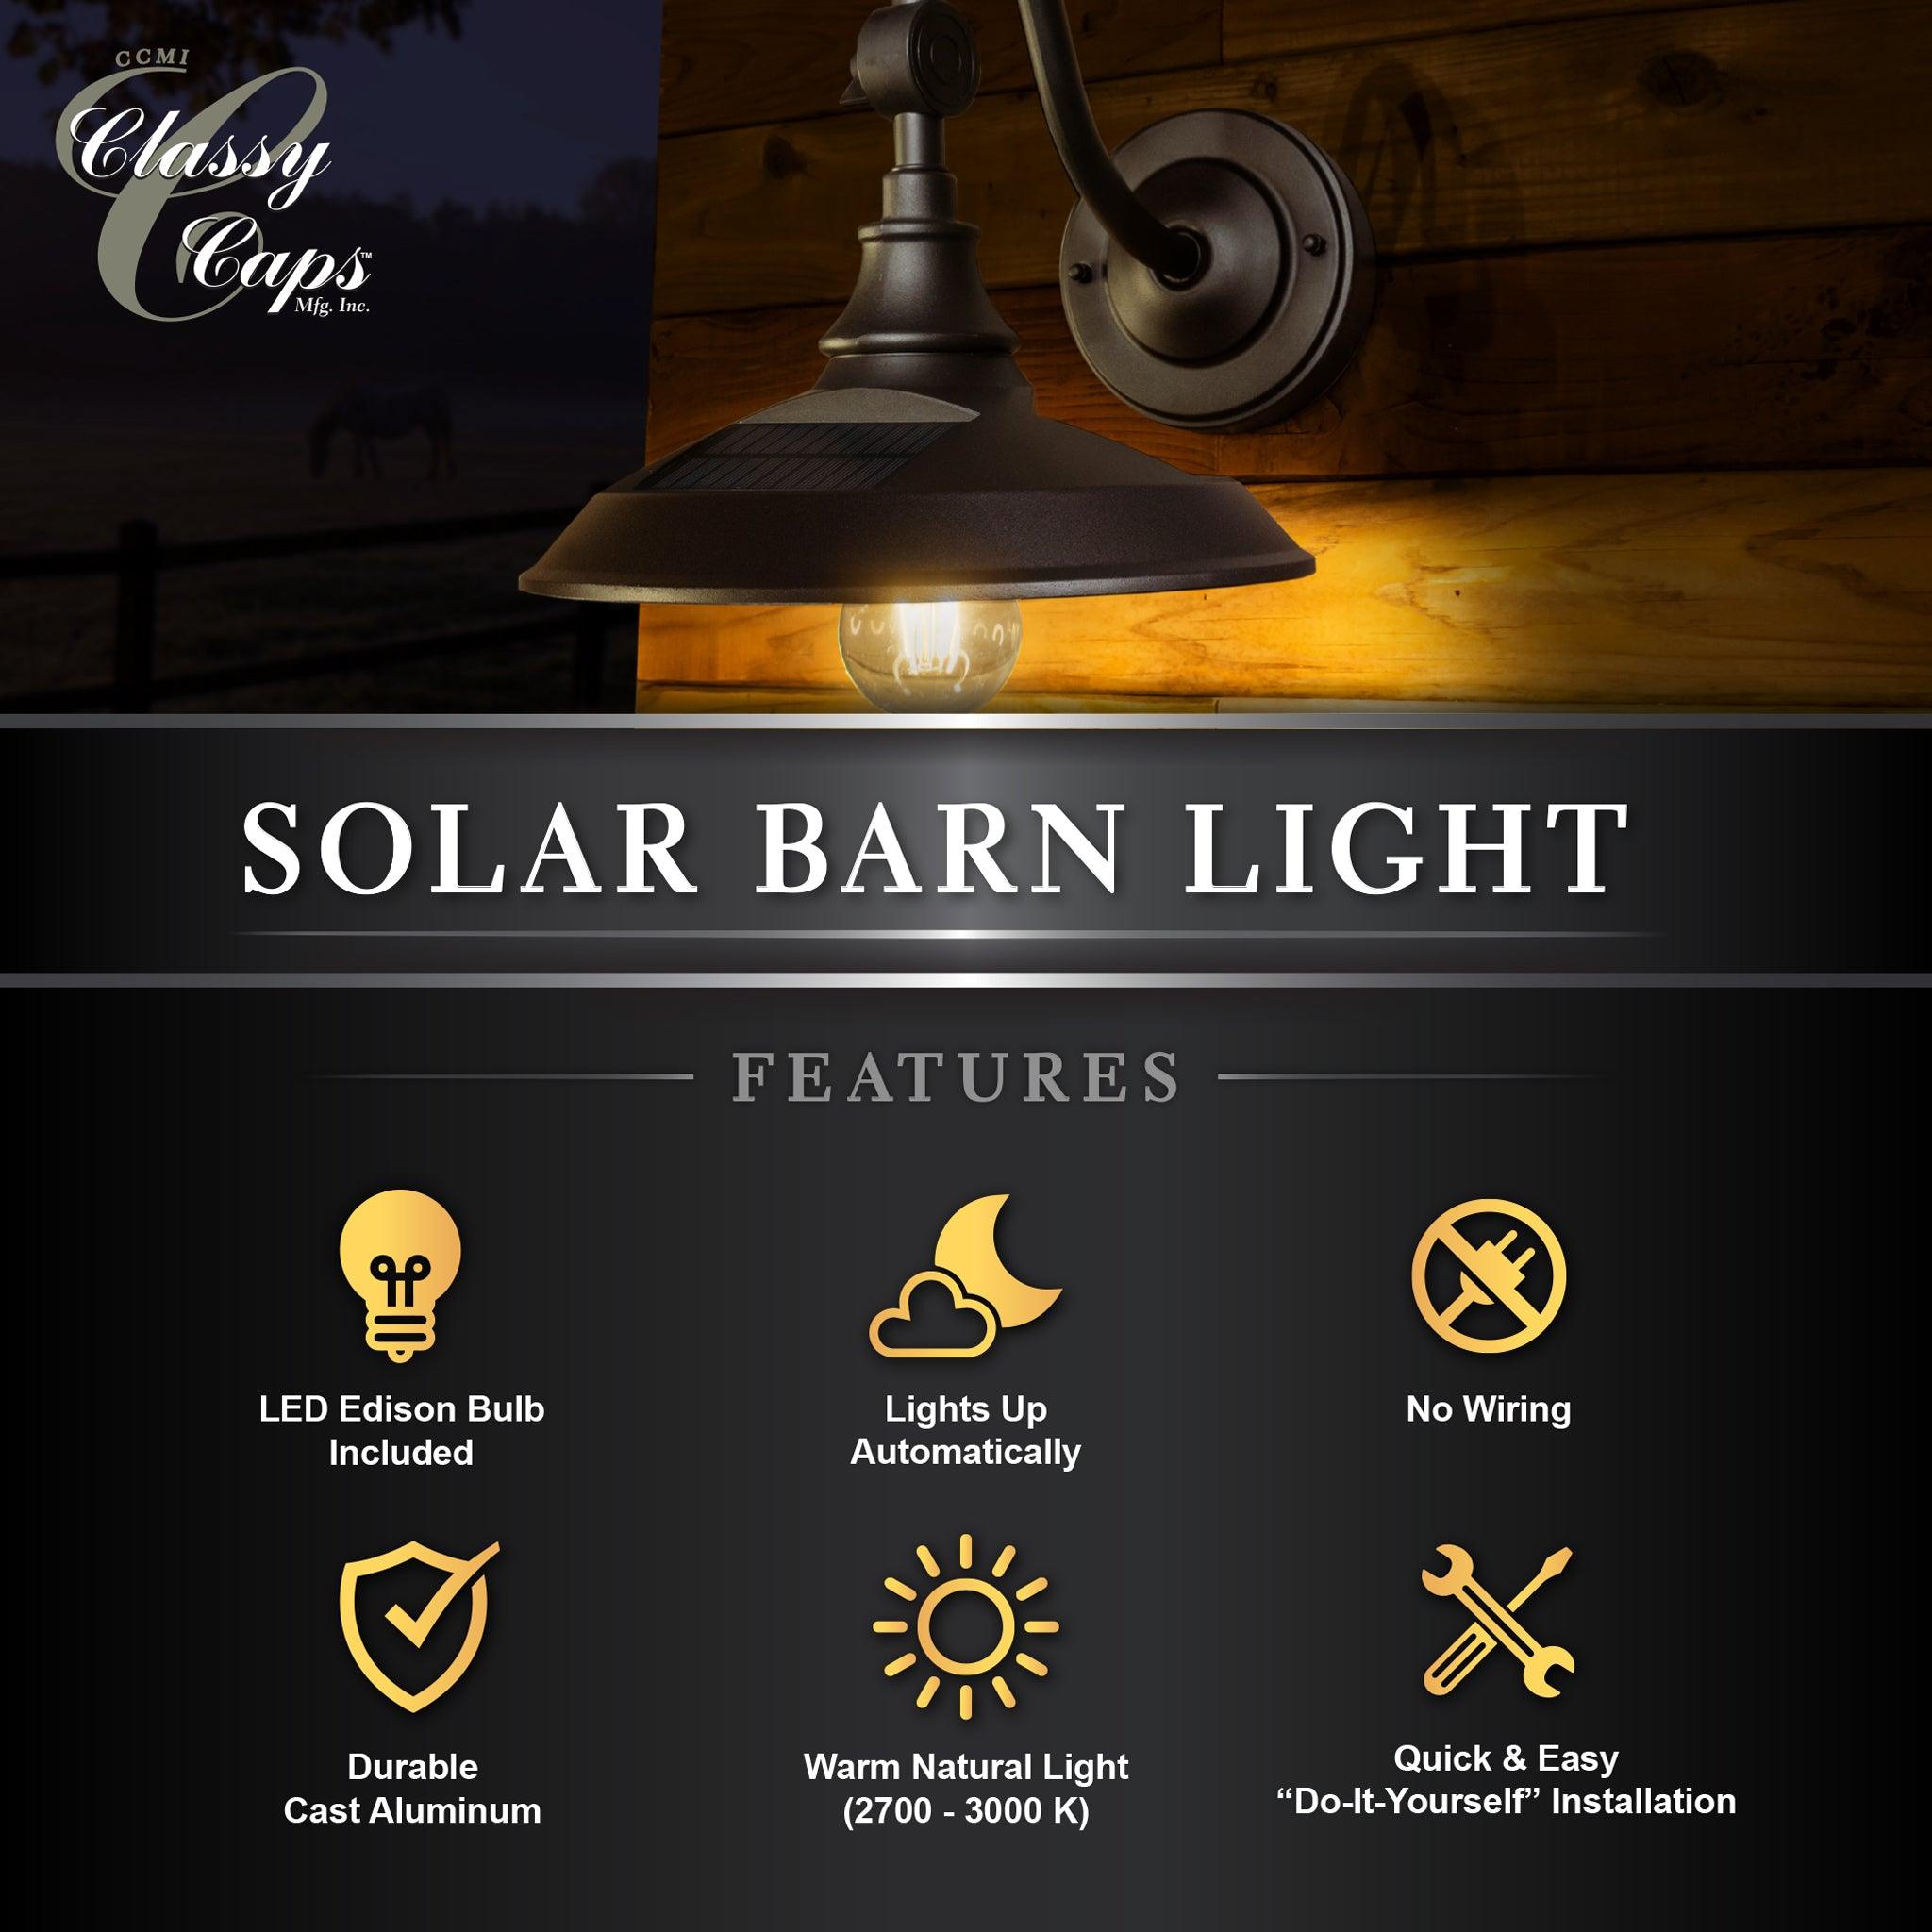 Solar Barn Light - Dark Bronze - Classy Caps Mfg. Inc.